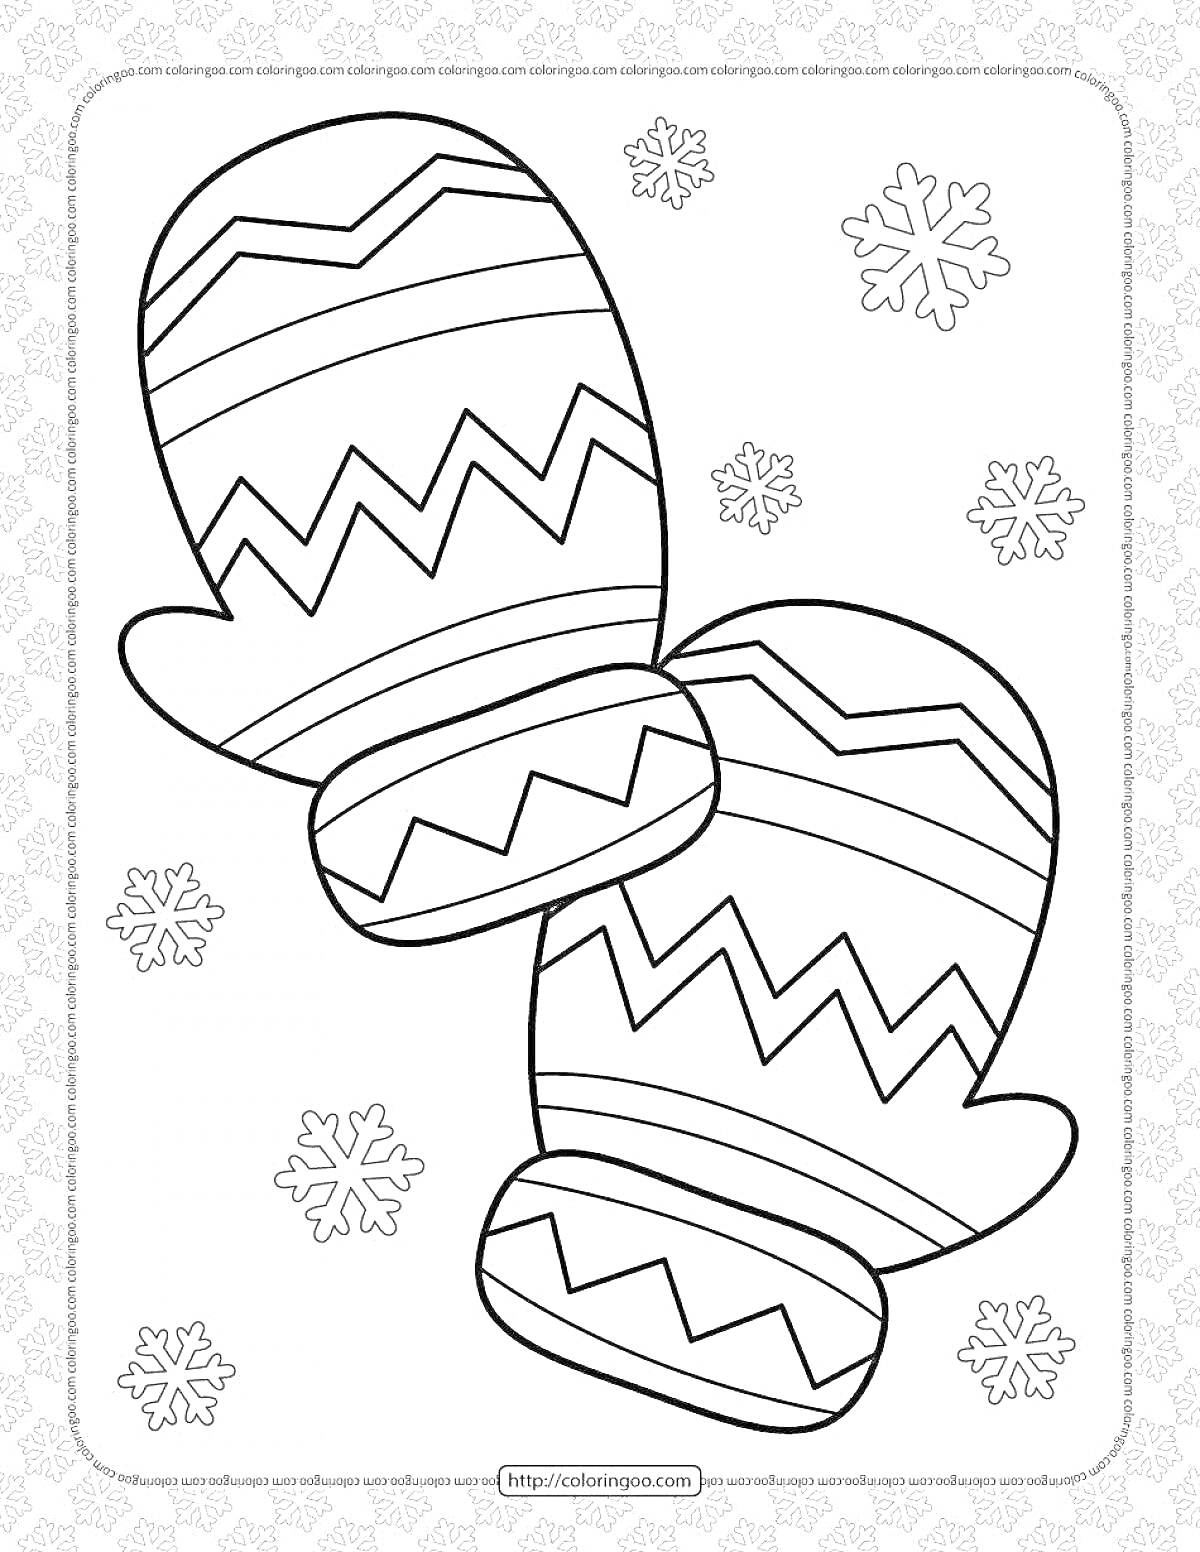 Раскраска Рукавицы с узорами и снежинками